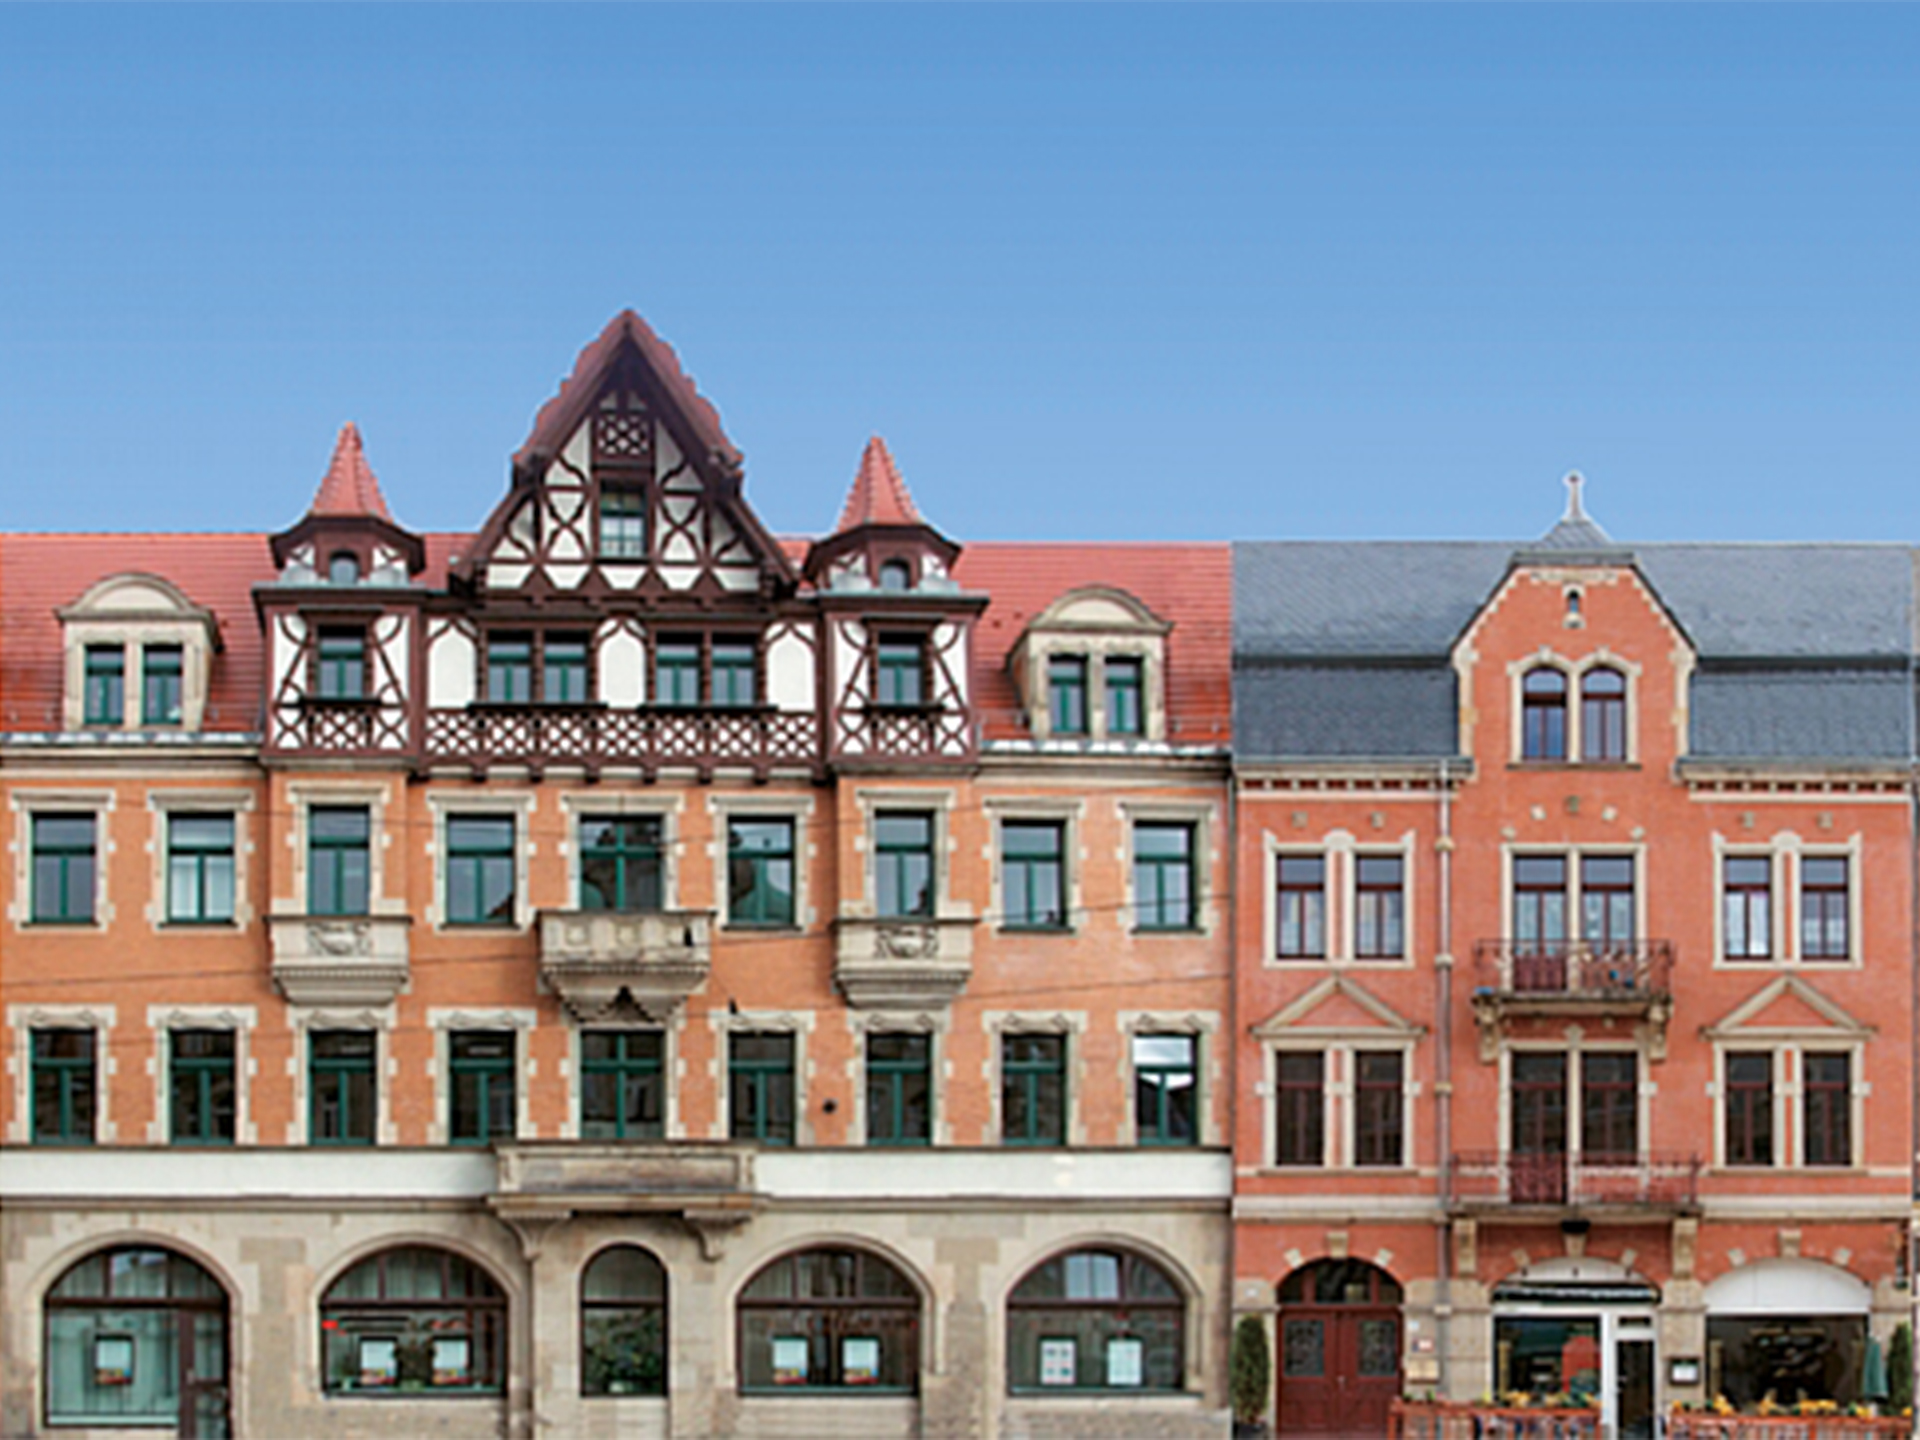 Halbrelief-Hintergrundkulisse Set mit 5 Bürgerhaus-Fassaden